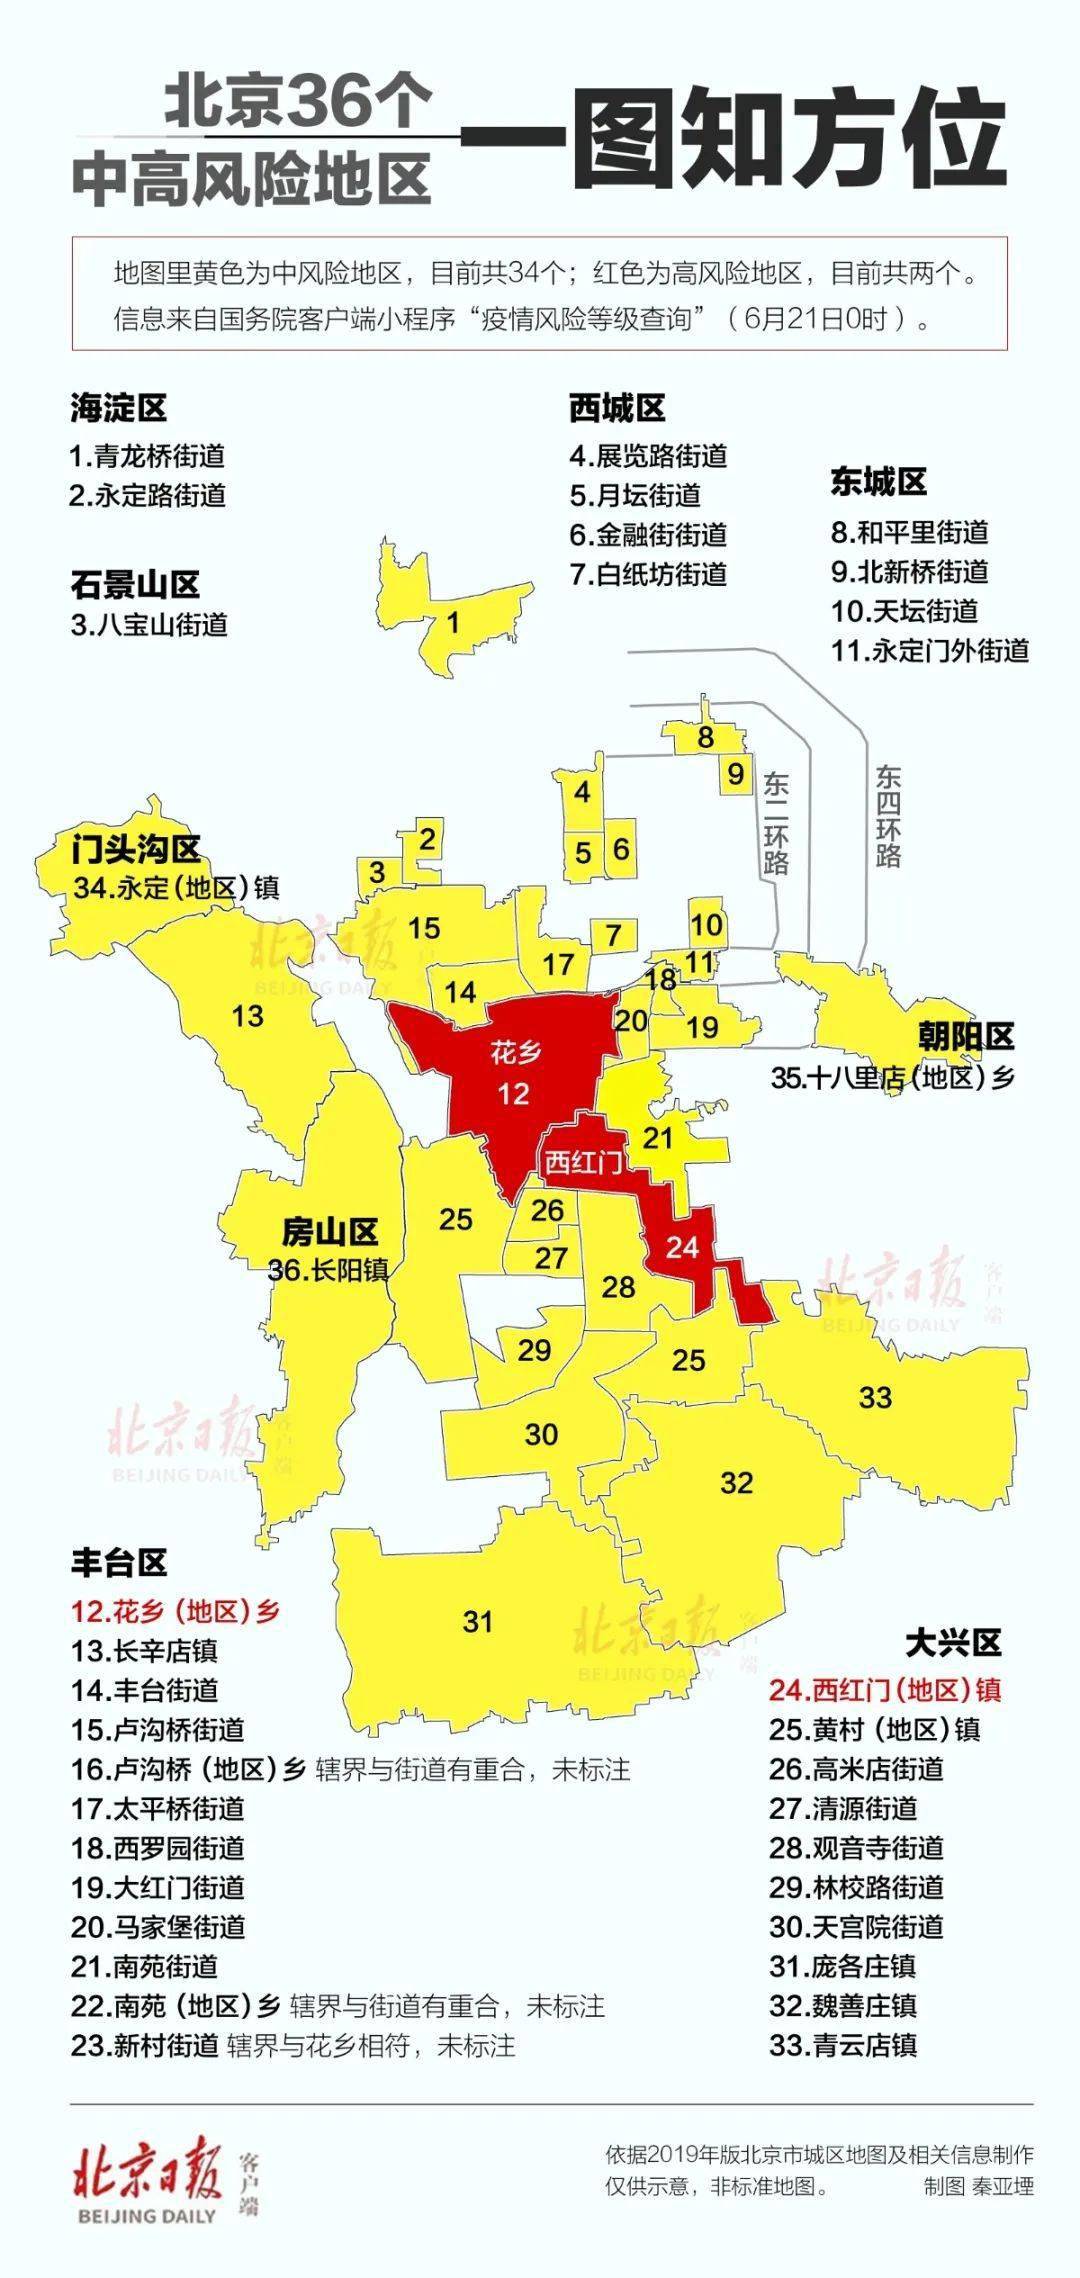 疫情风险等级查询"显示 截至6月20日15时,北京丰台马家堡街道升级为